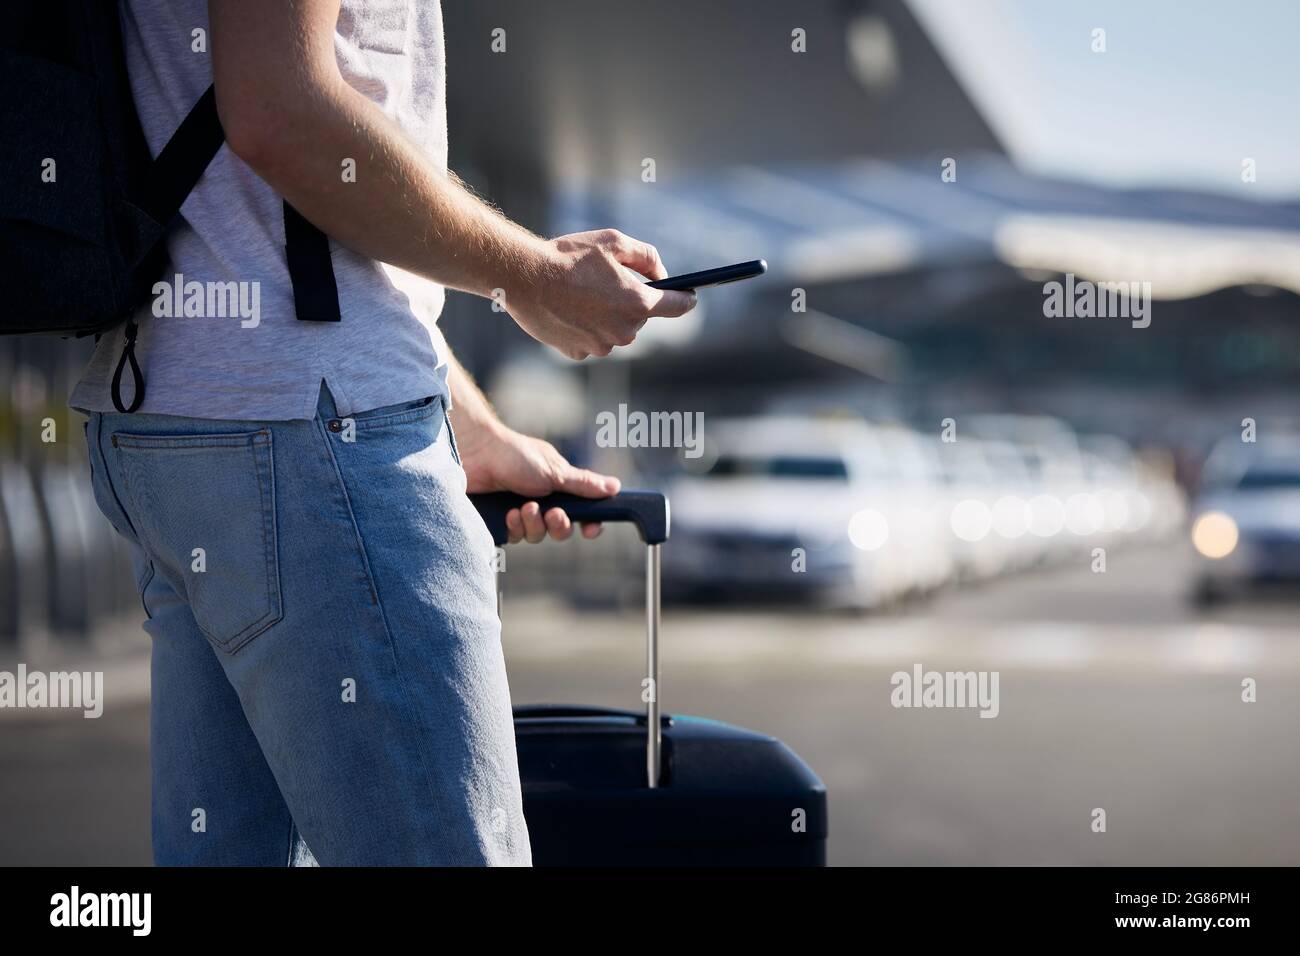 Homme tenant un smartphone et utilisant une application mobile contre une rangée de voitures de taxi. Thèmes technologie moderne, partage de voitures et voyages. Banque D'Images